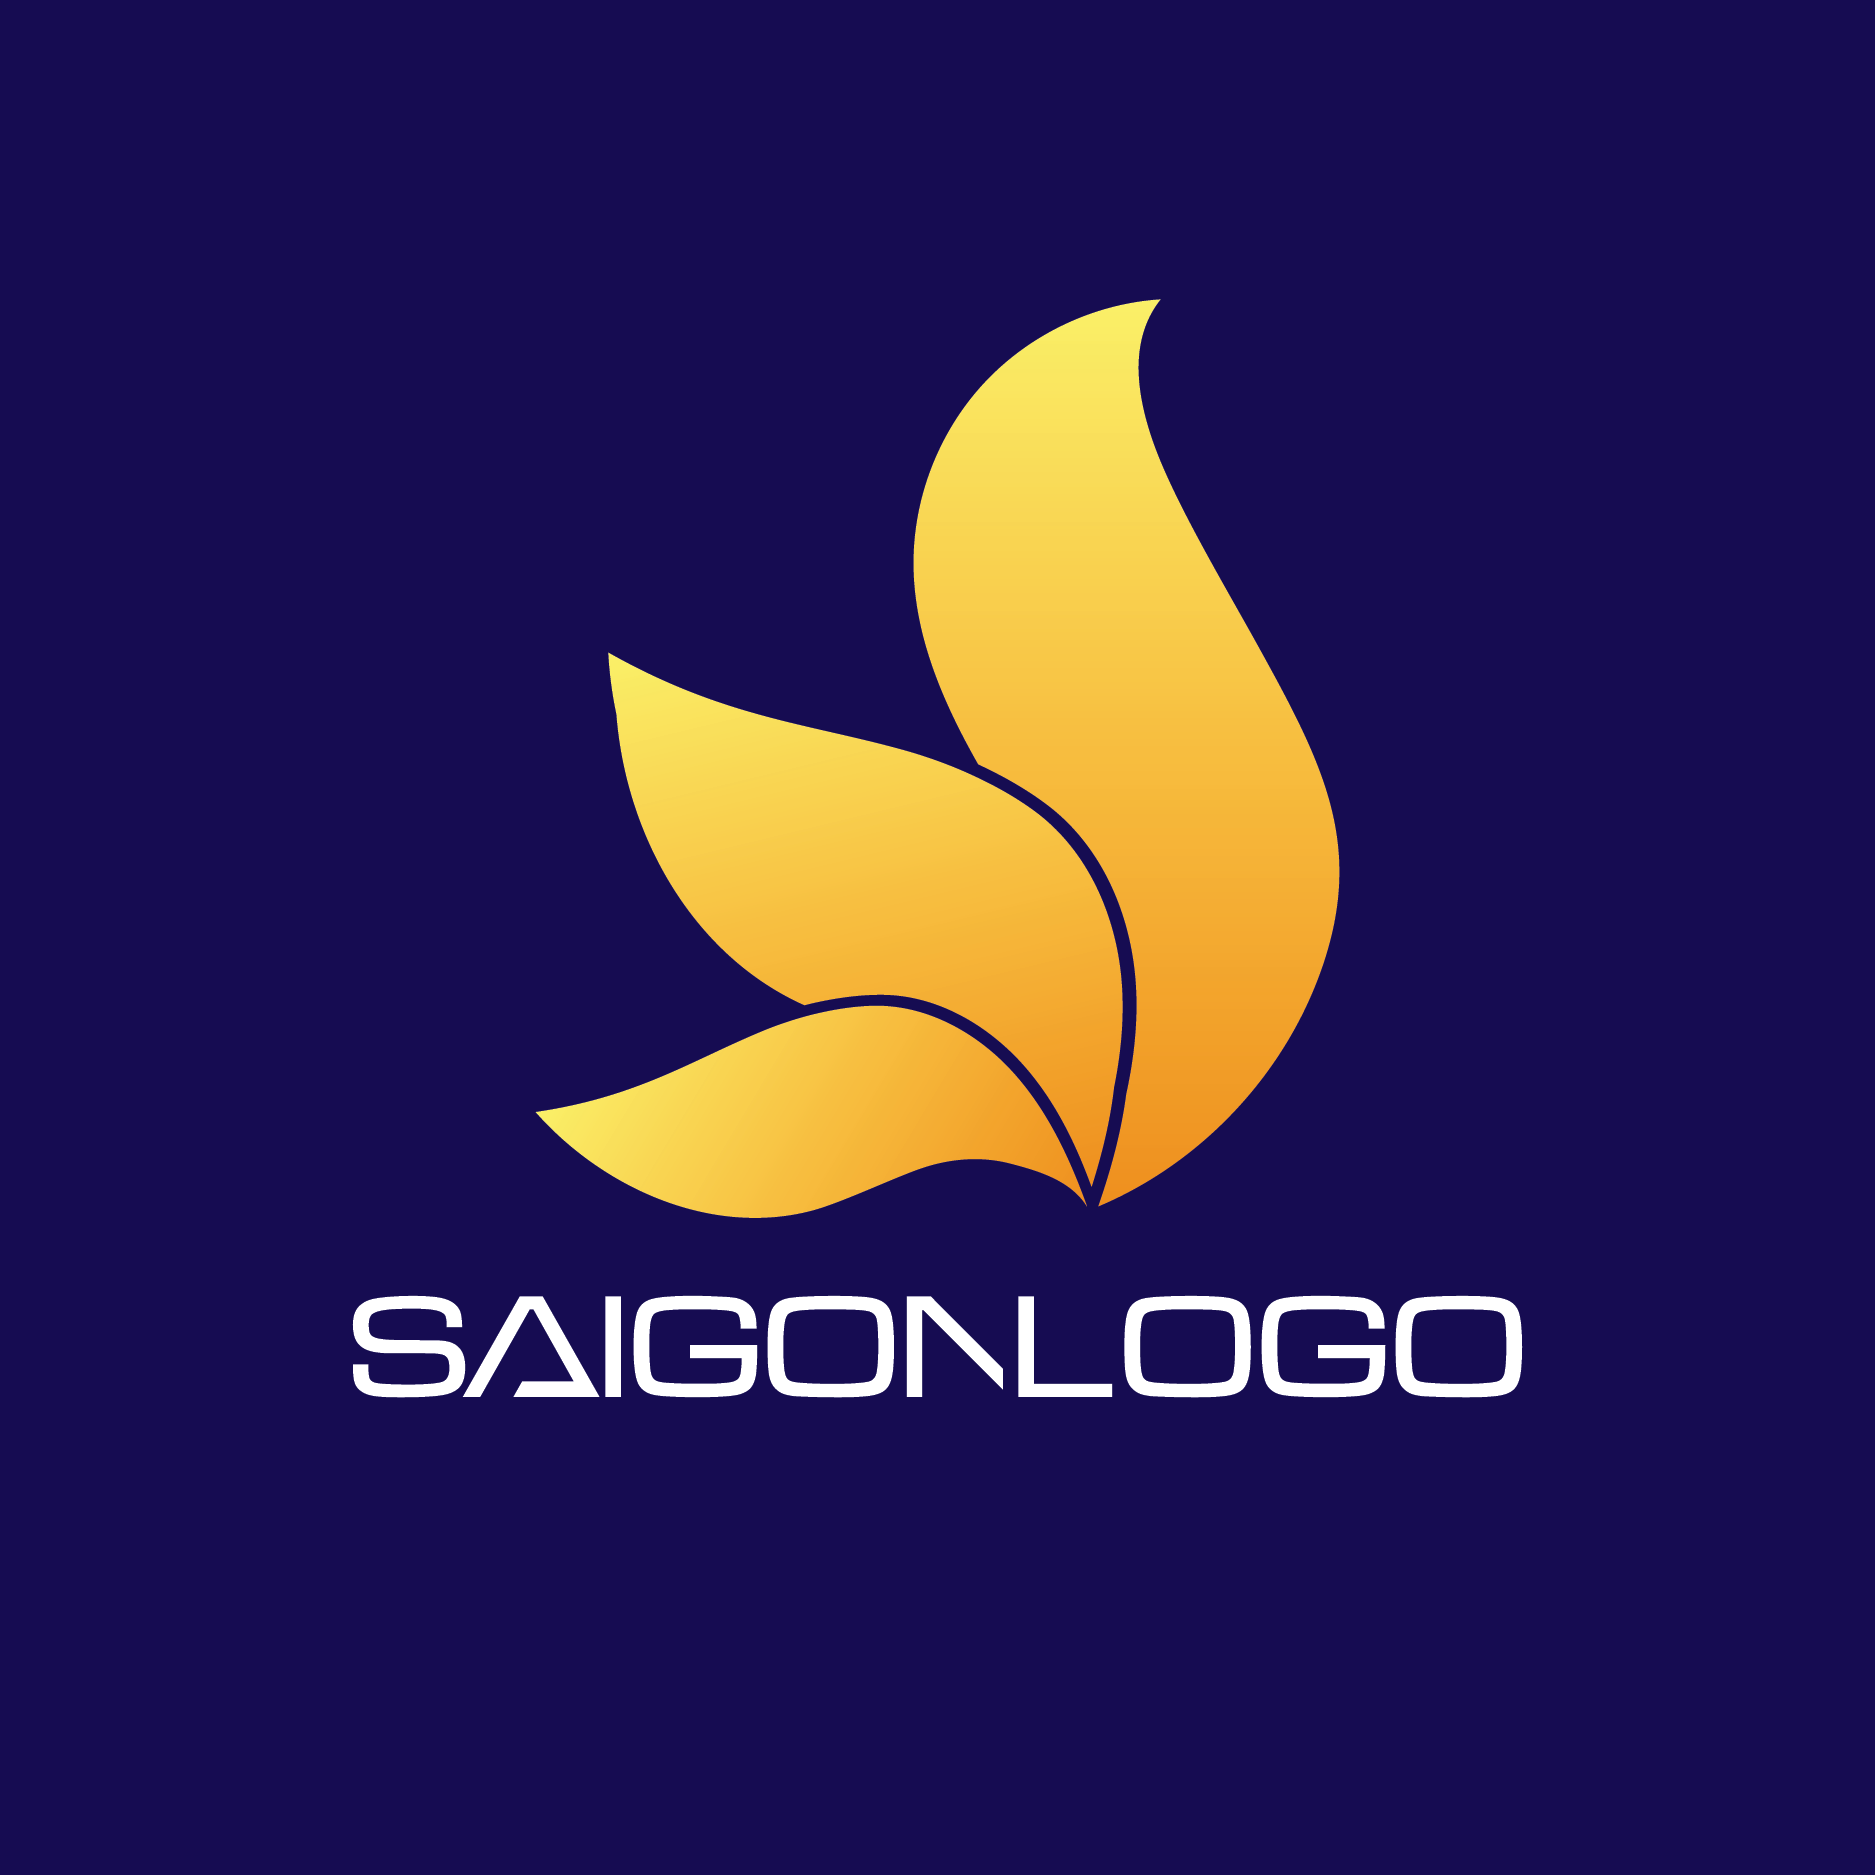 Saigonlogo profile on Qualified.One